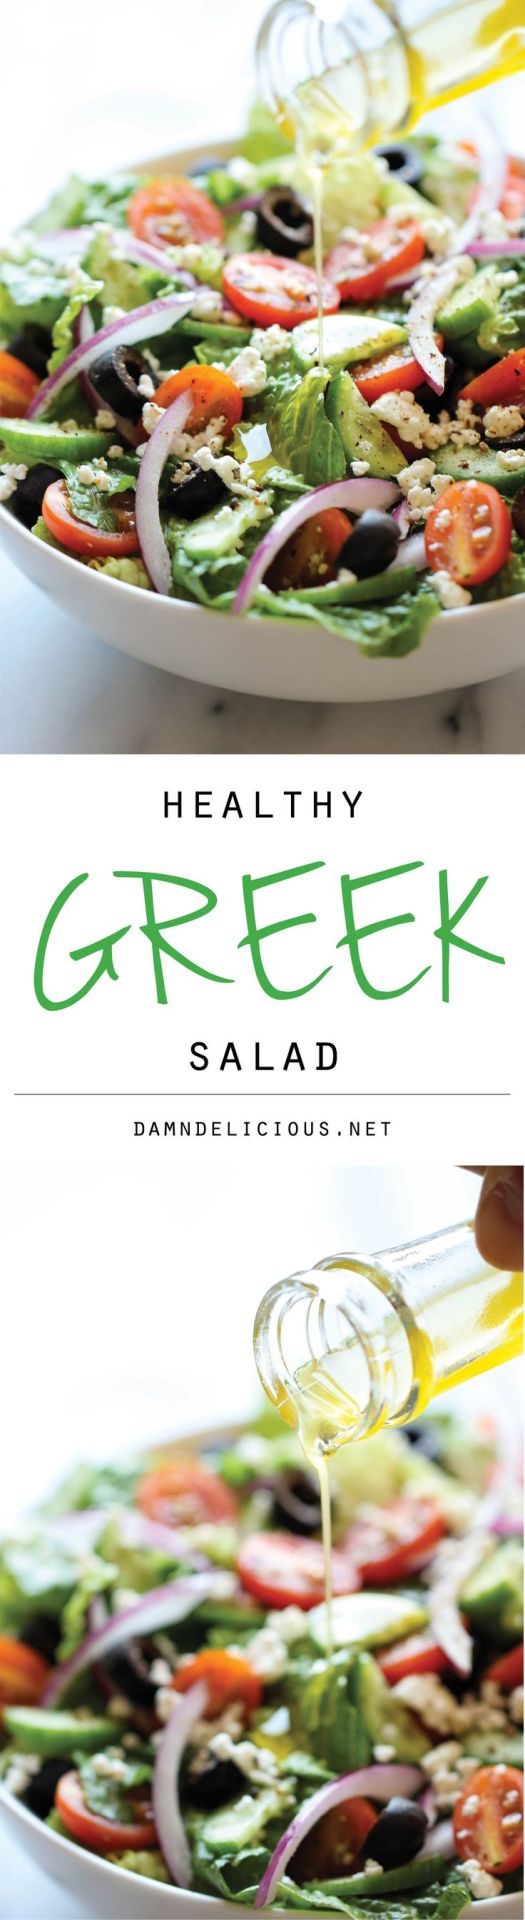 Tossed greek salad